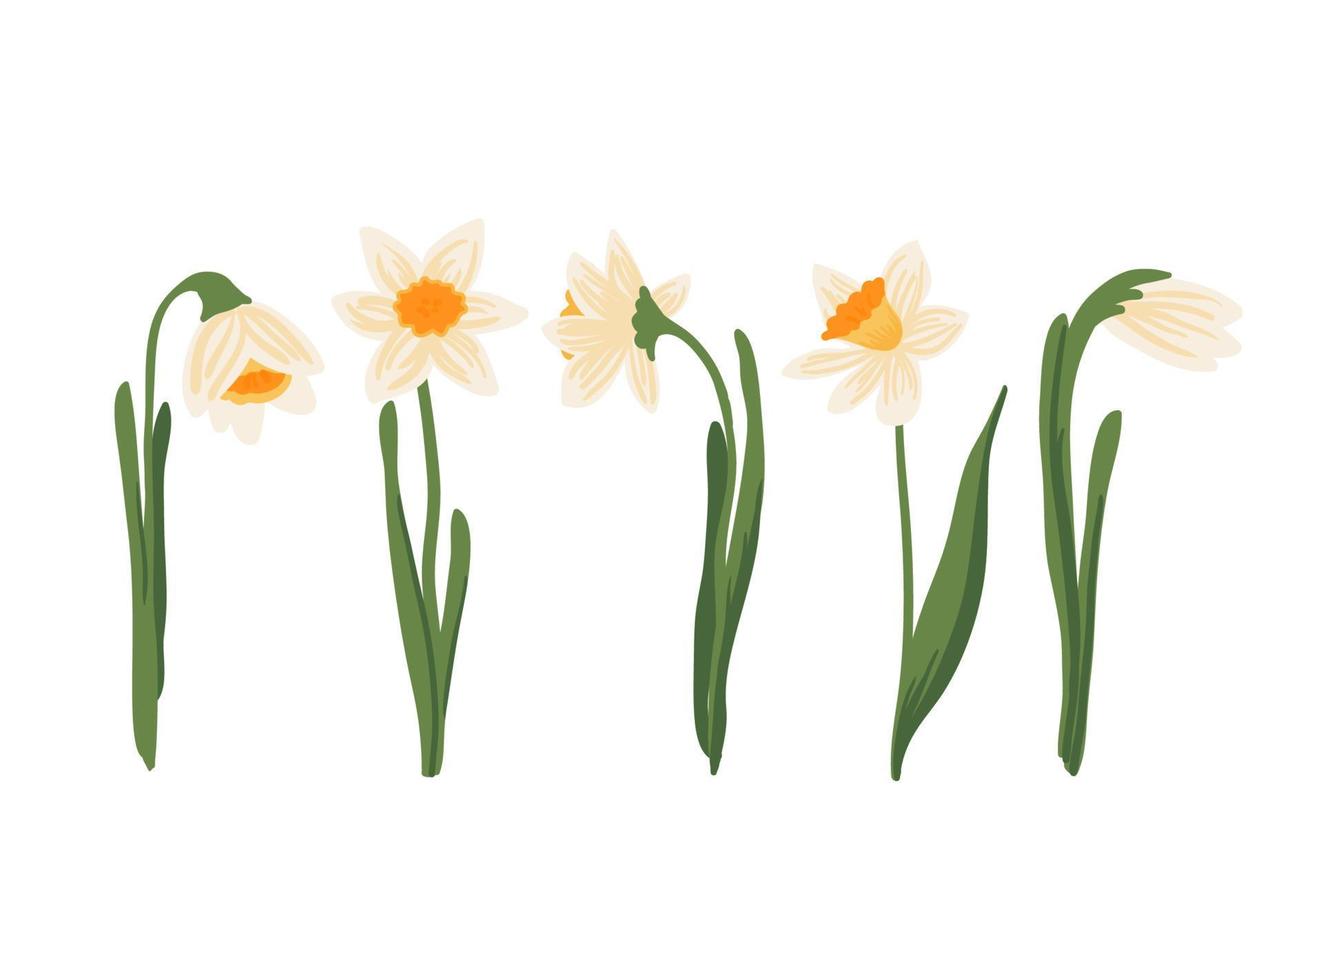 vektor uppsättning av gula påskliljor eller narcisser på vit bakgrund. handritad botanisk illustration. tidigt på våren krukväxt trädgård blomma blommande lökväxt med rot. blommig samling i platt stil